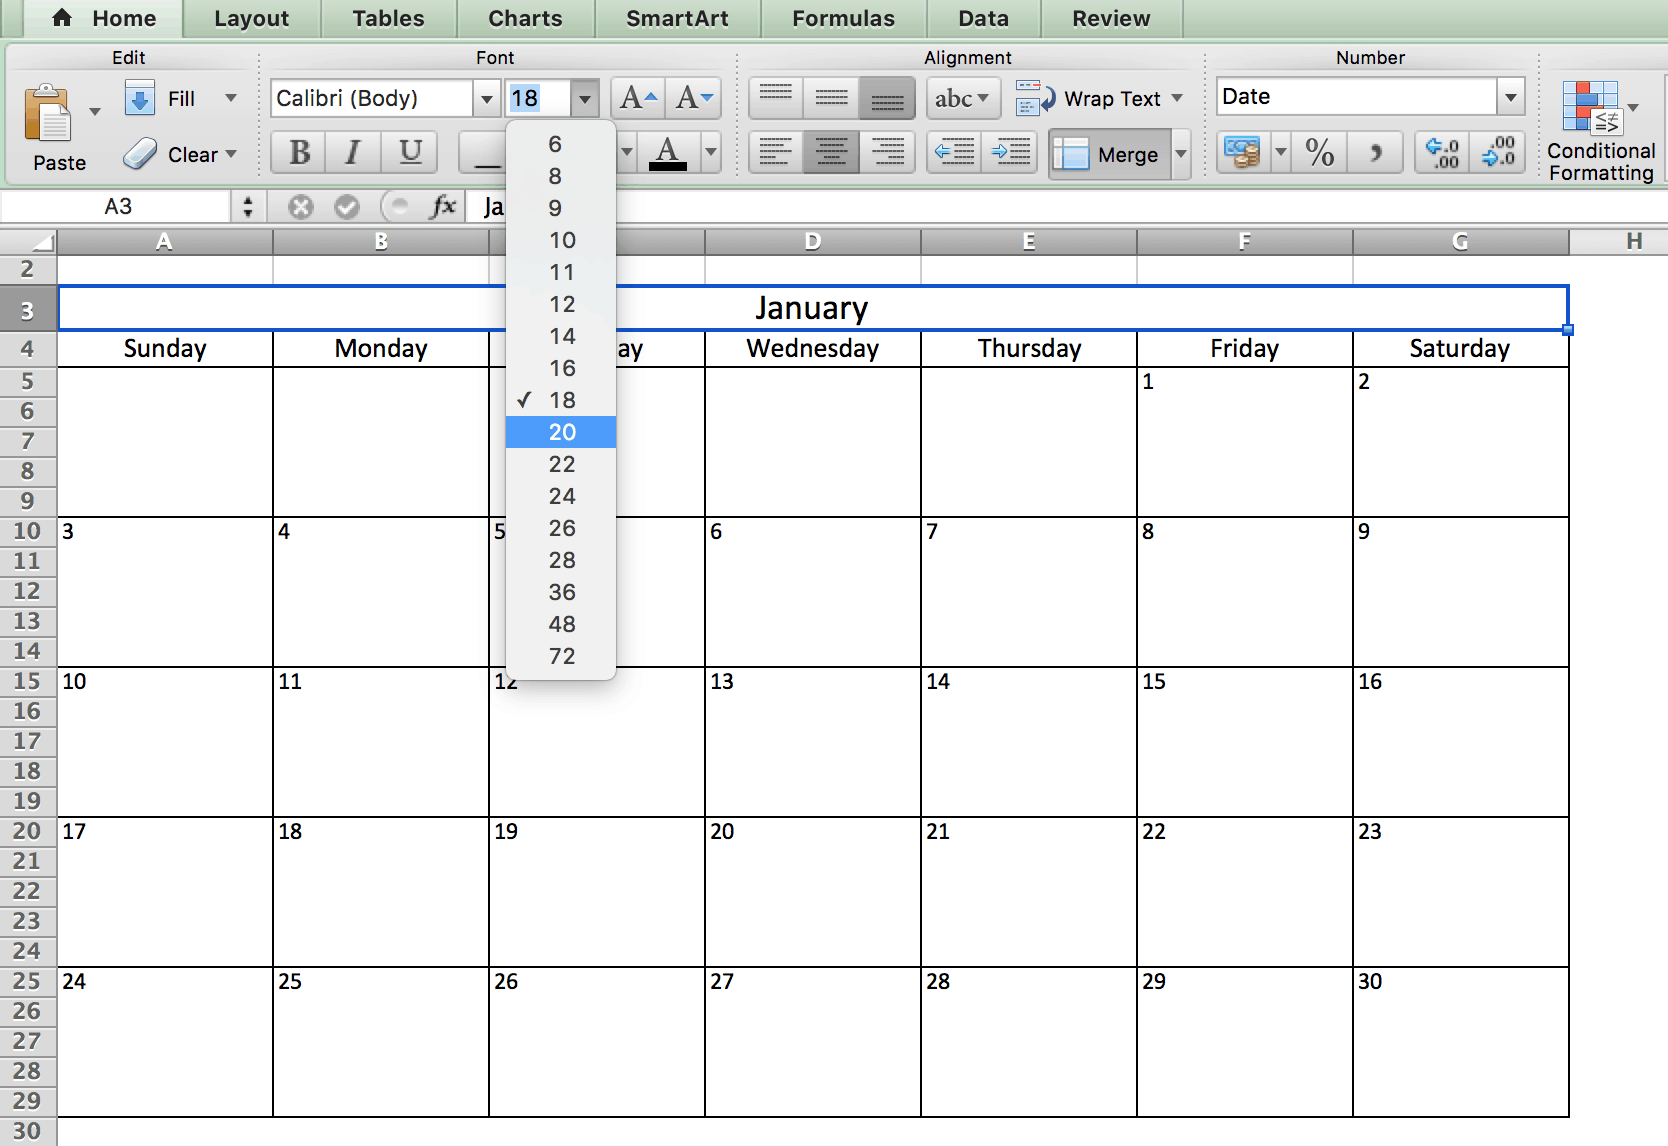 Modelo De Calendario En Excel Imagesee